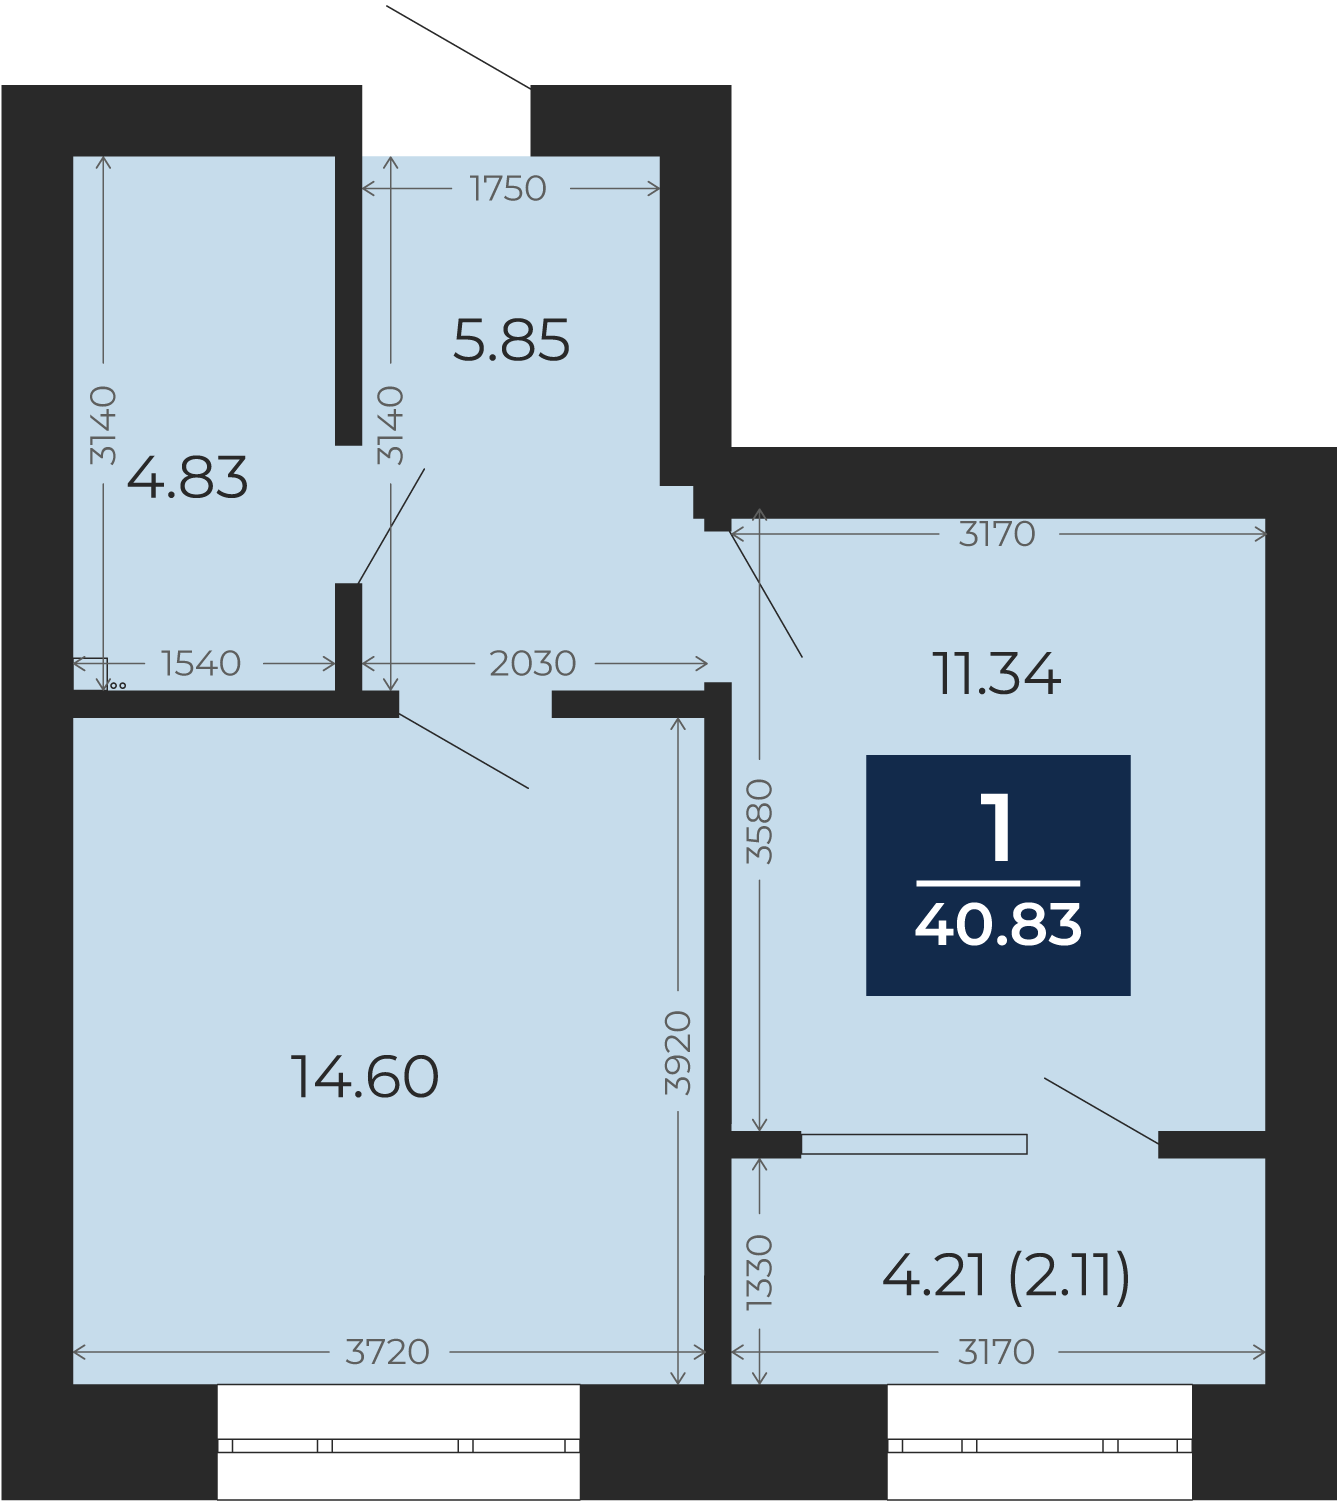 Квартира № 177, 1-комнатная, 40.83 кв. м, 10 этаж